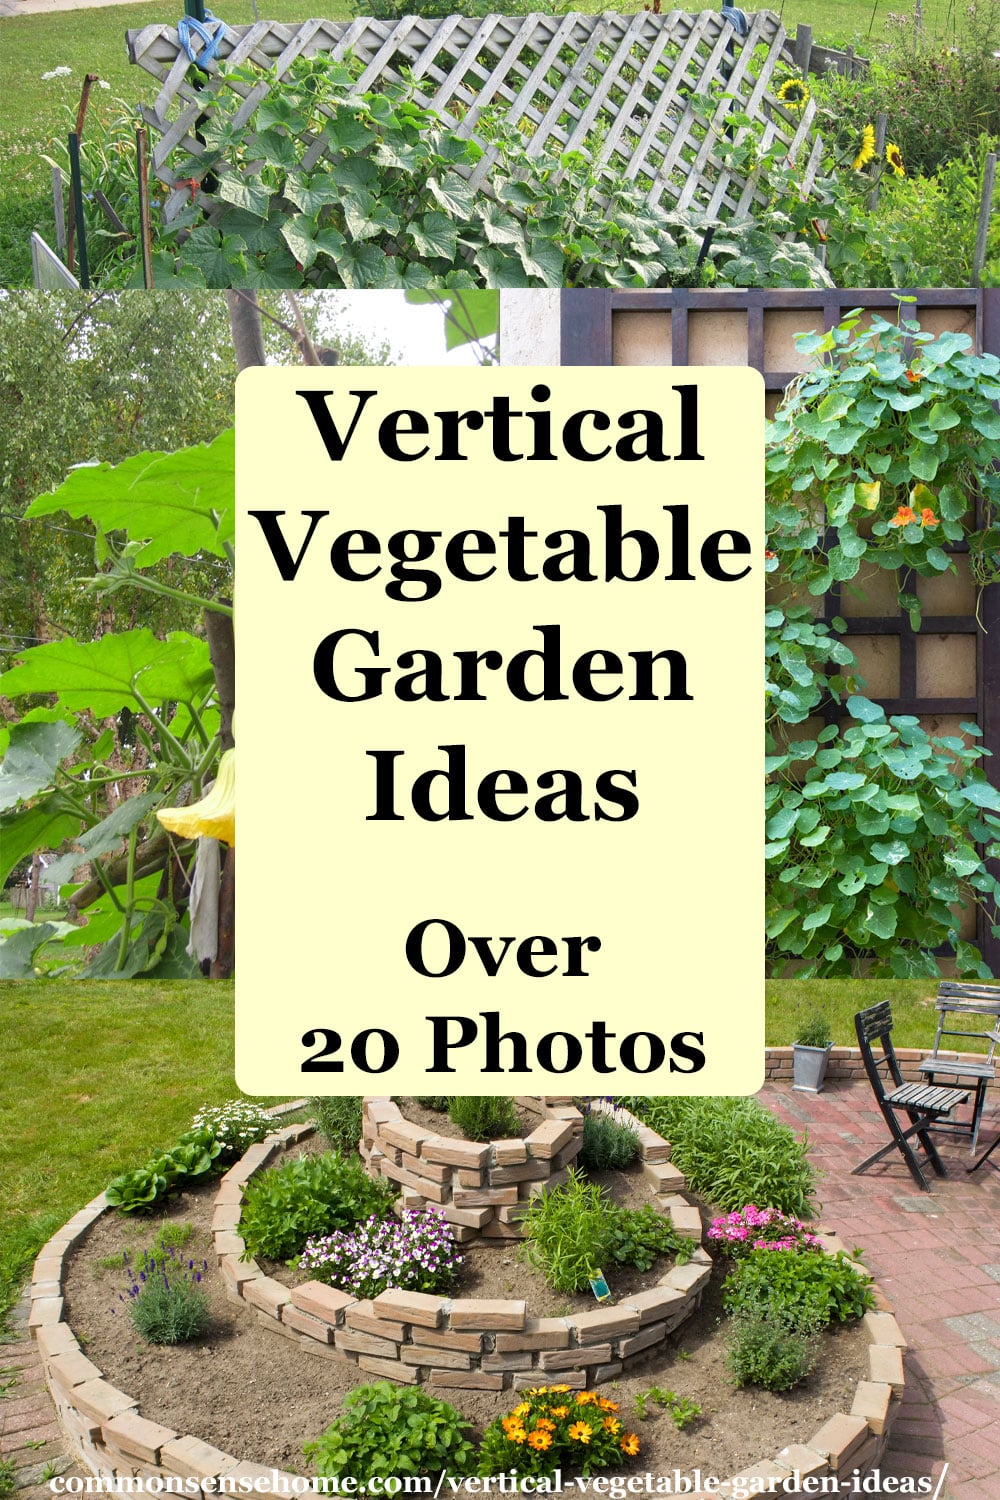 Vertical Vegetable Garden Ideas (Over 20 Photos)